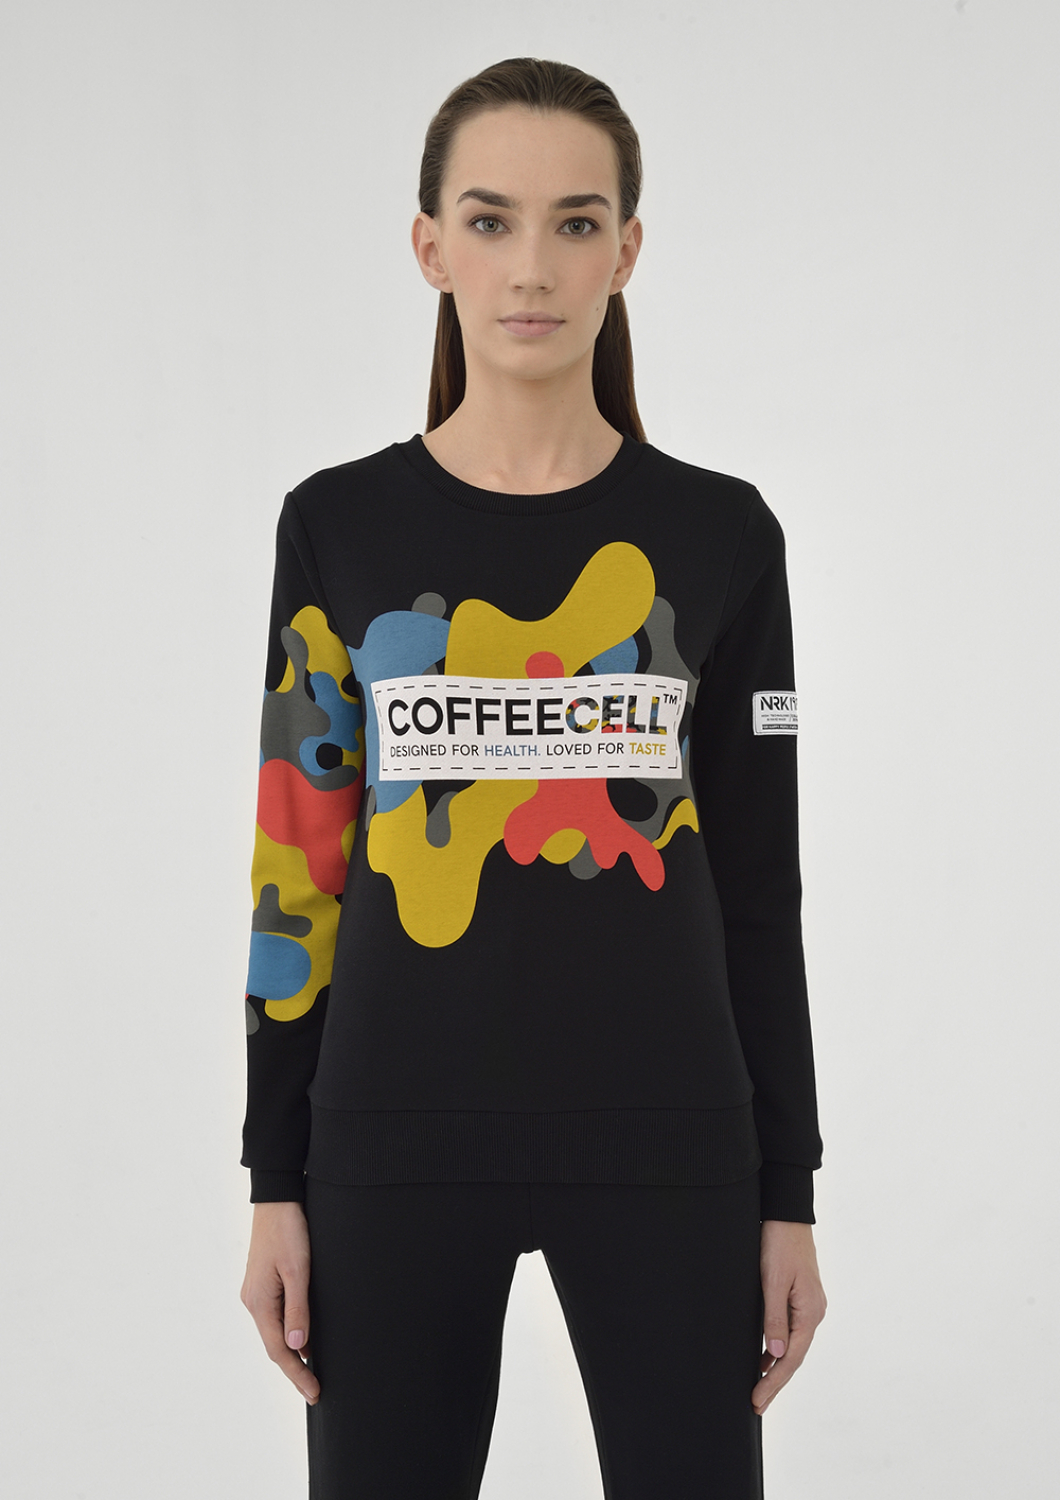 COFFEECELL sweatshirt. Female.